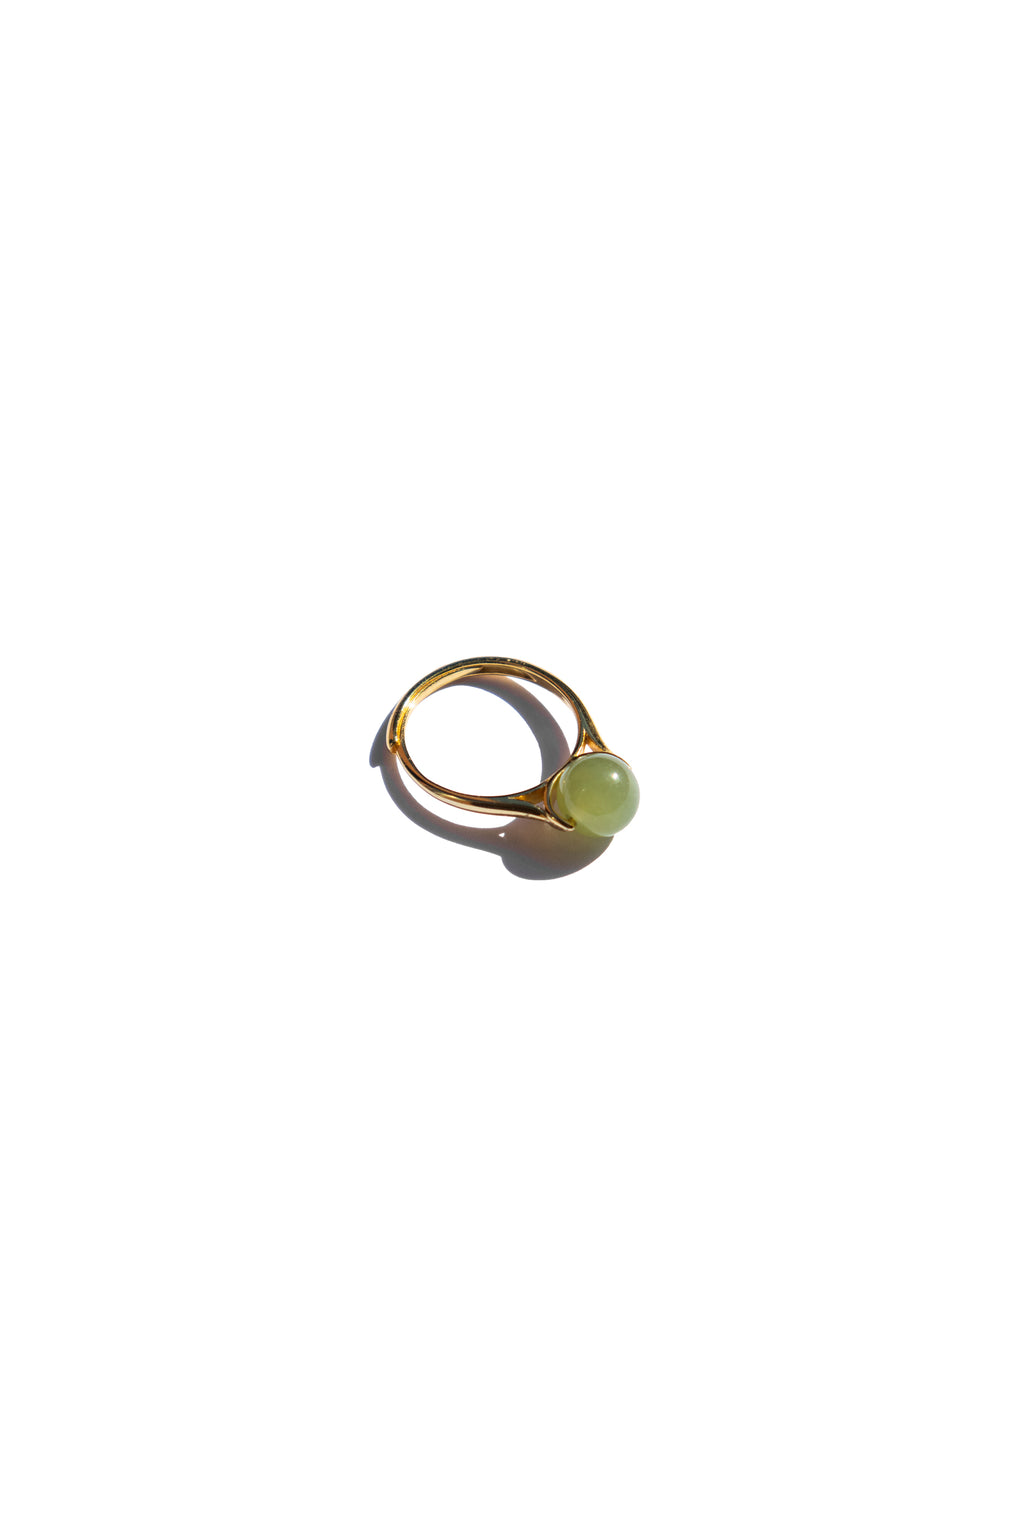 seree-Equinox-Green-bead-jade-ring